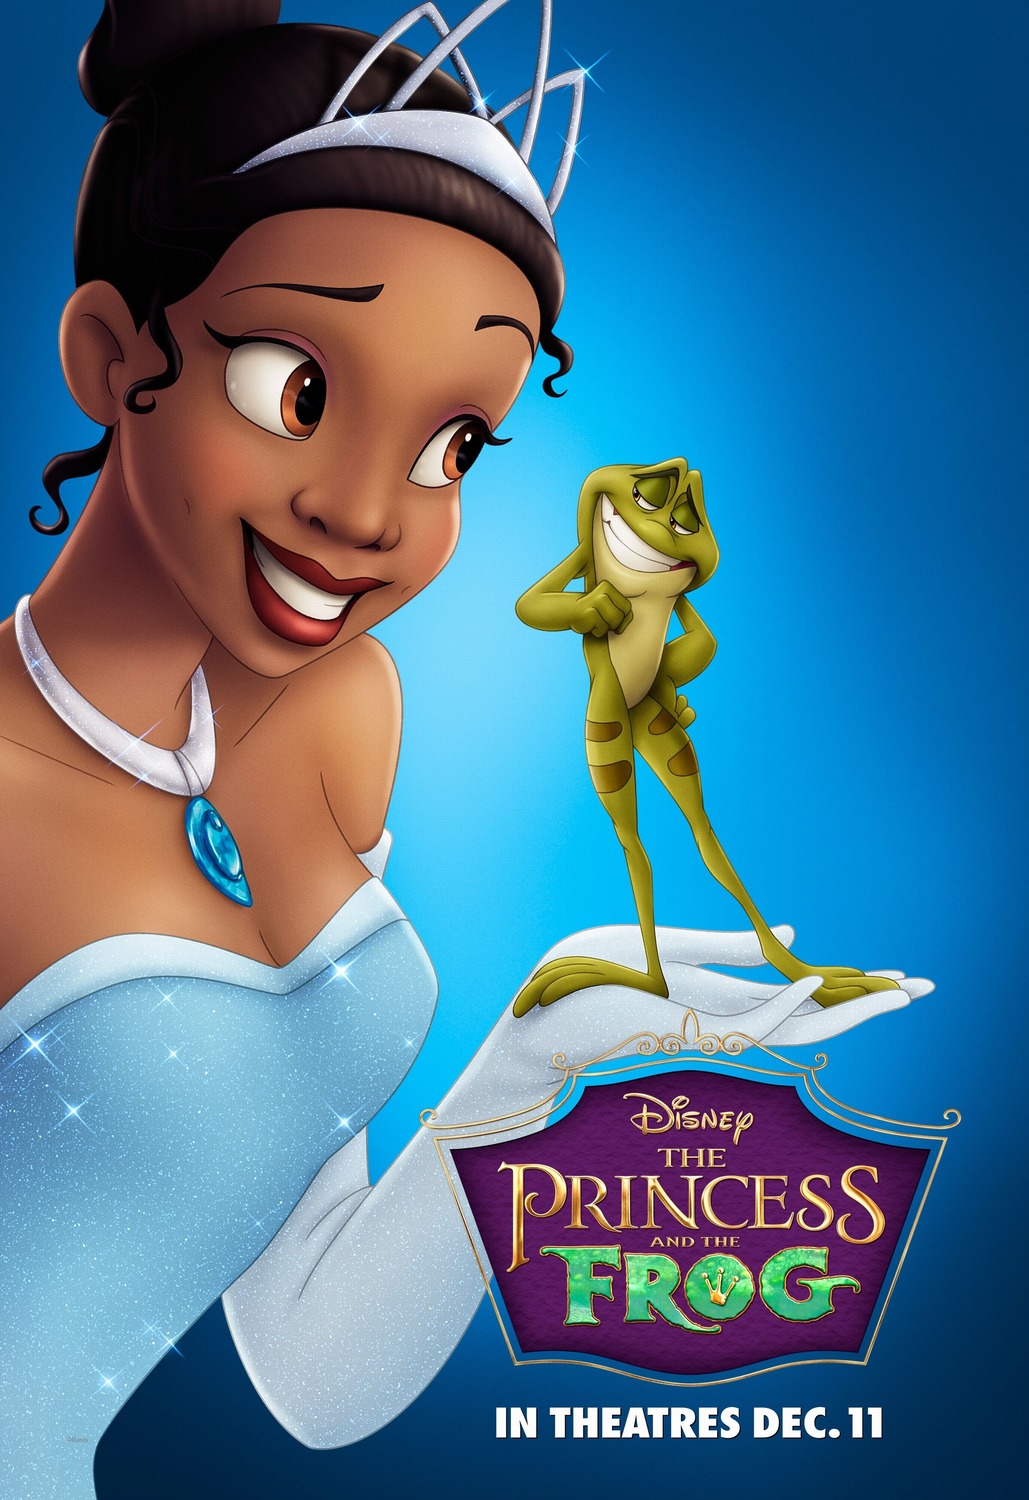 disney princess movie posters